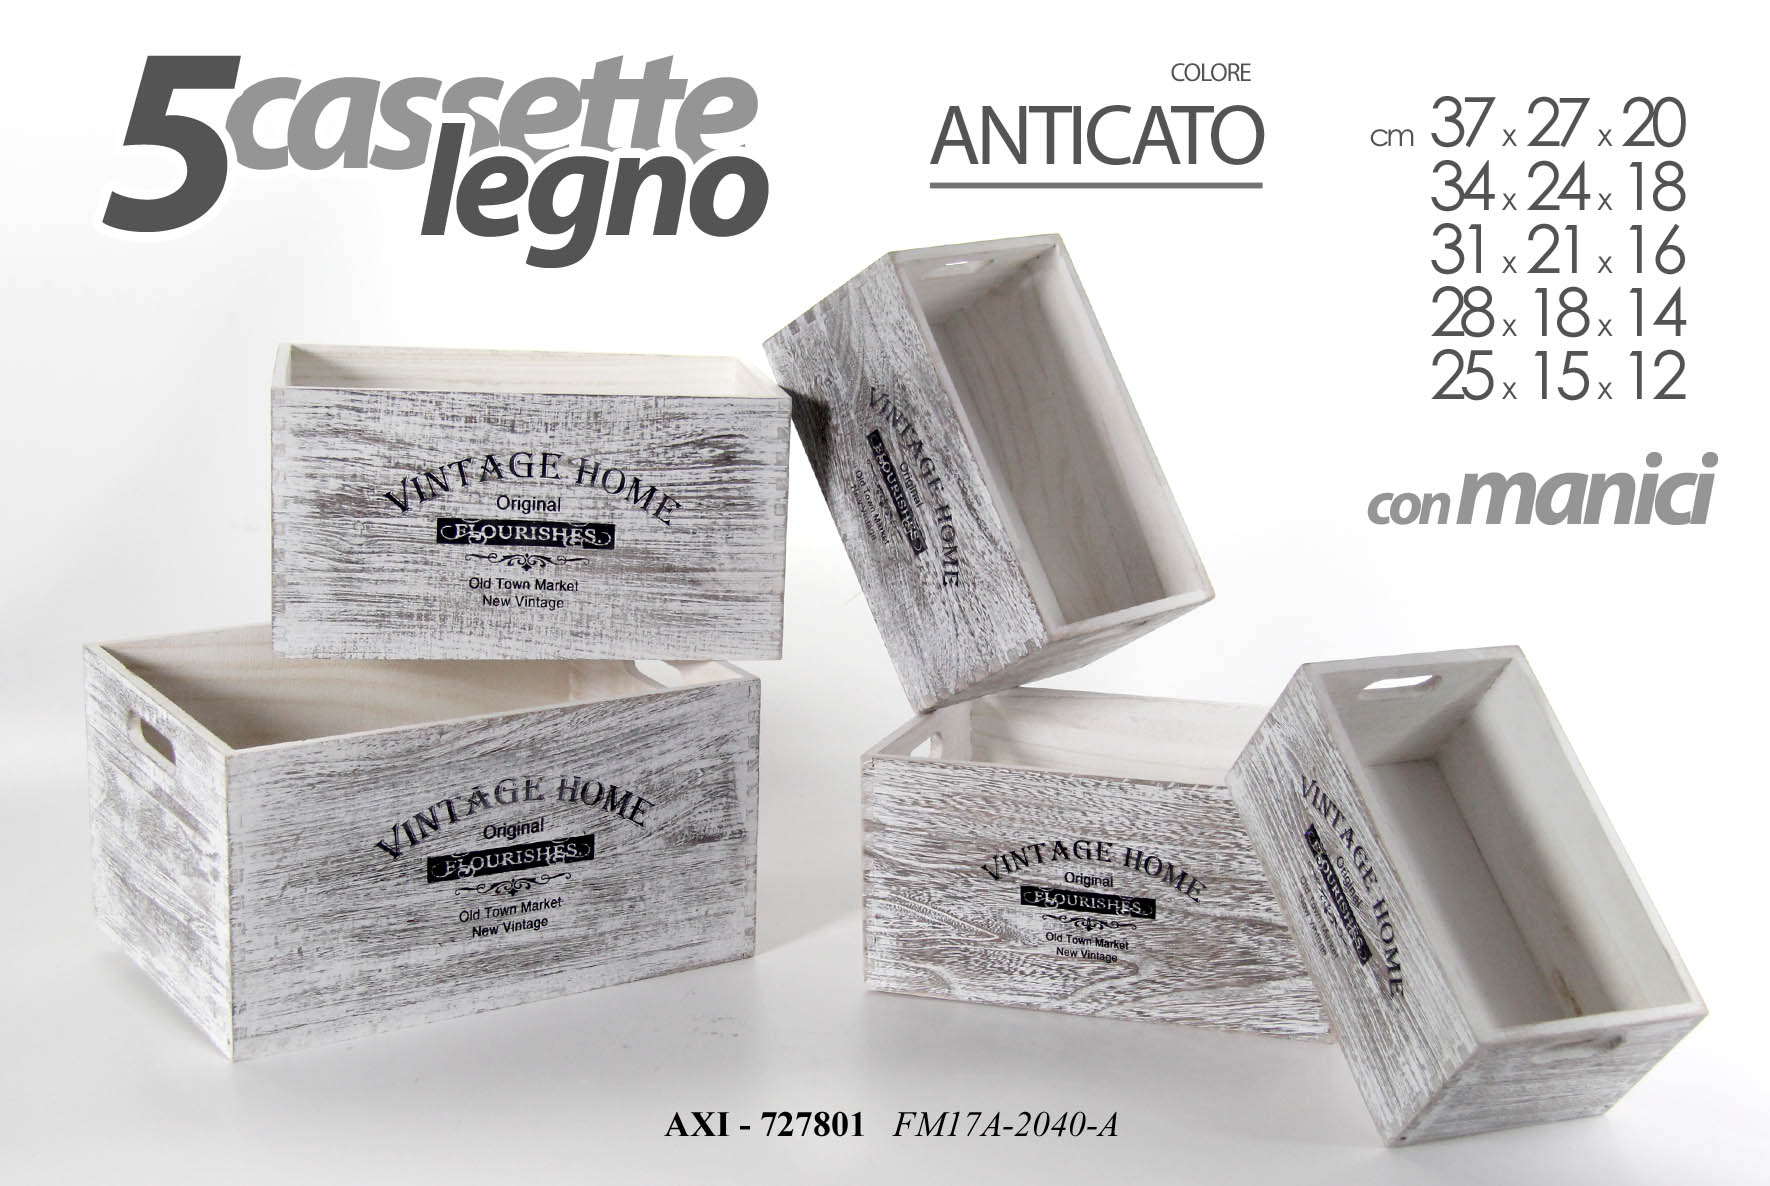 CASSETTE LEGNO ANTIC 5P 727801